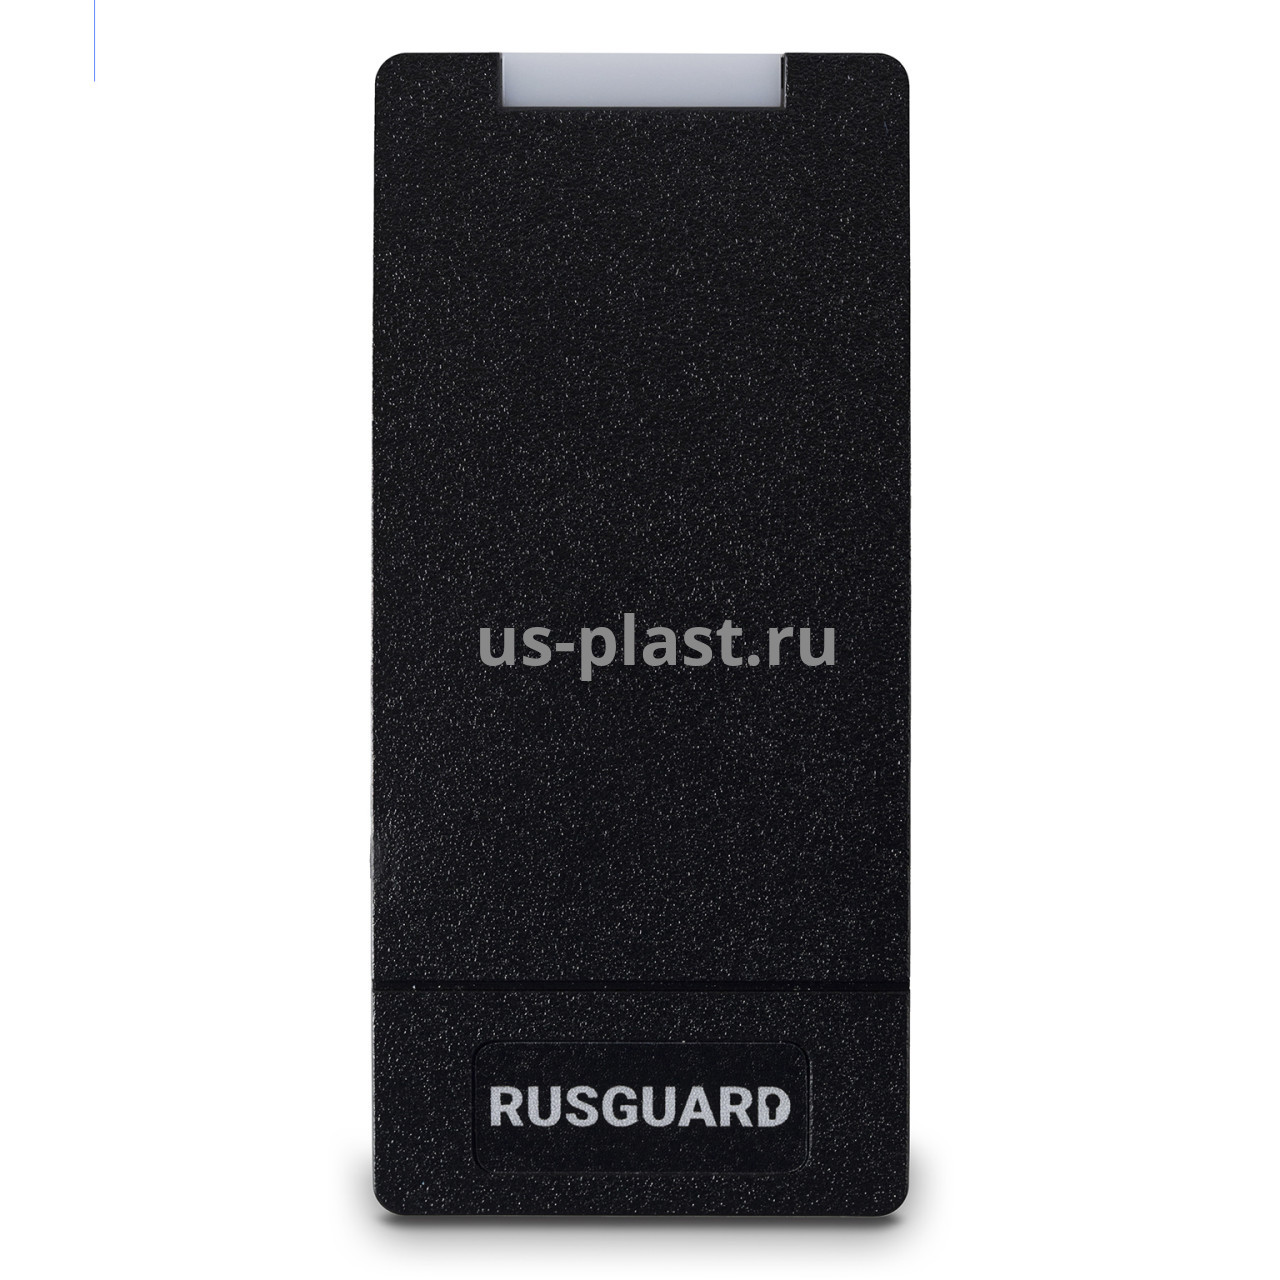 RusGuard R10-EHT (черный), автономный контроллер со встроенным считывателем карт EM-Marine. Фото N2